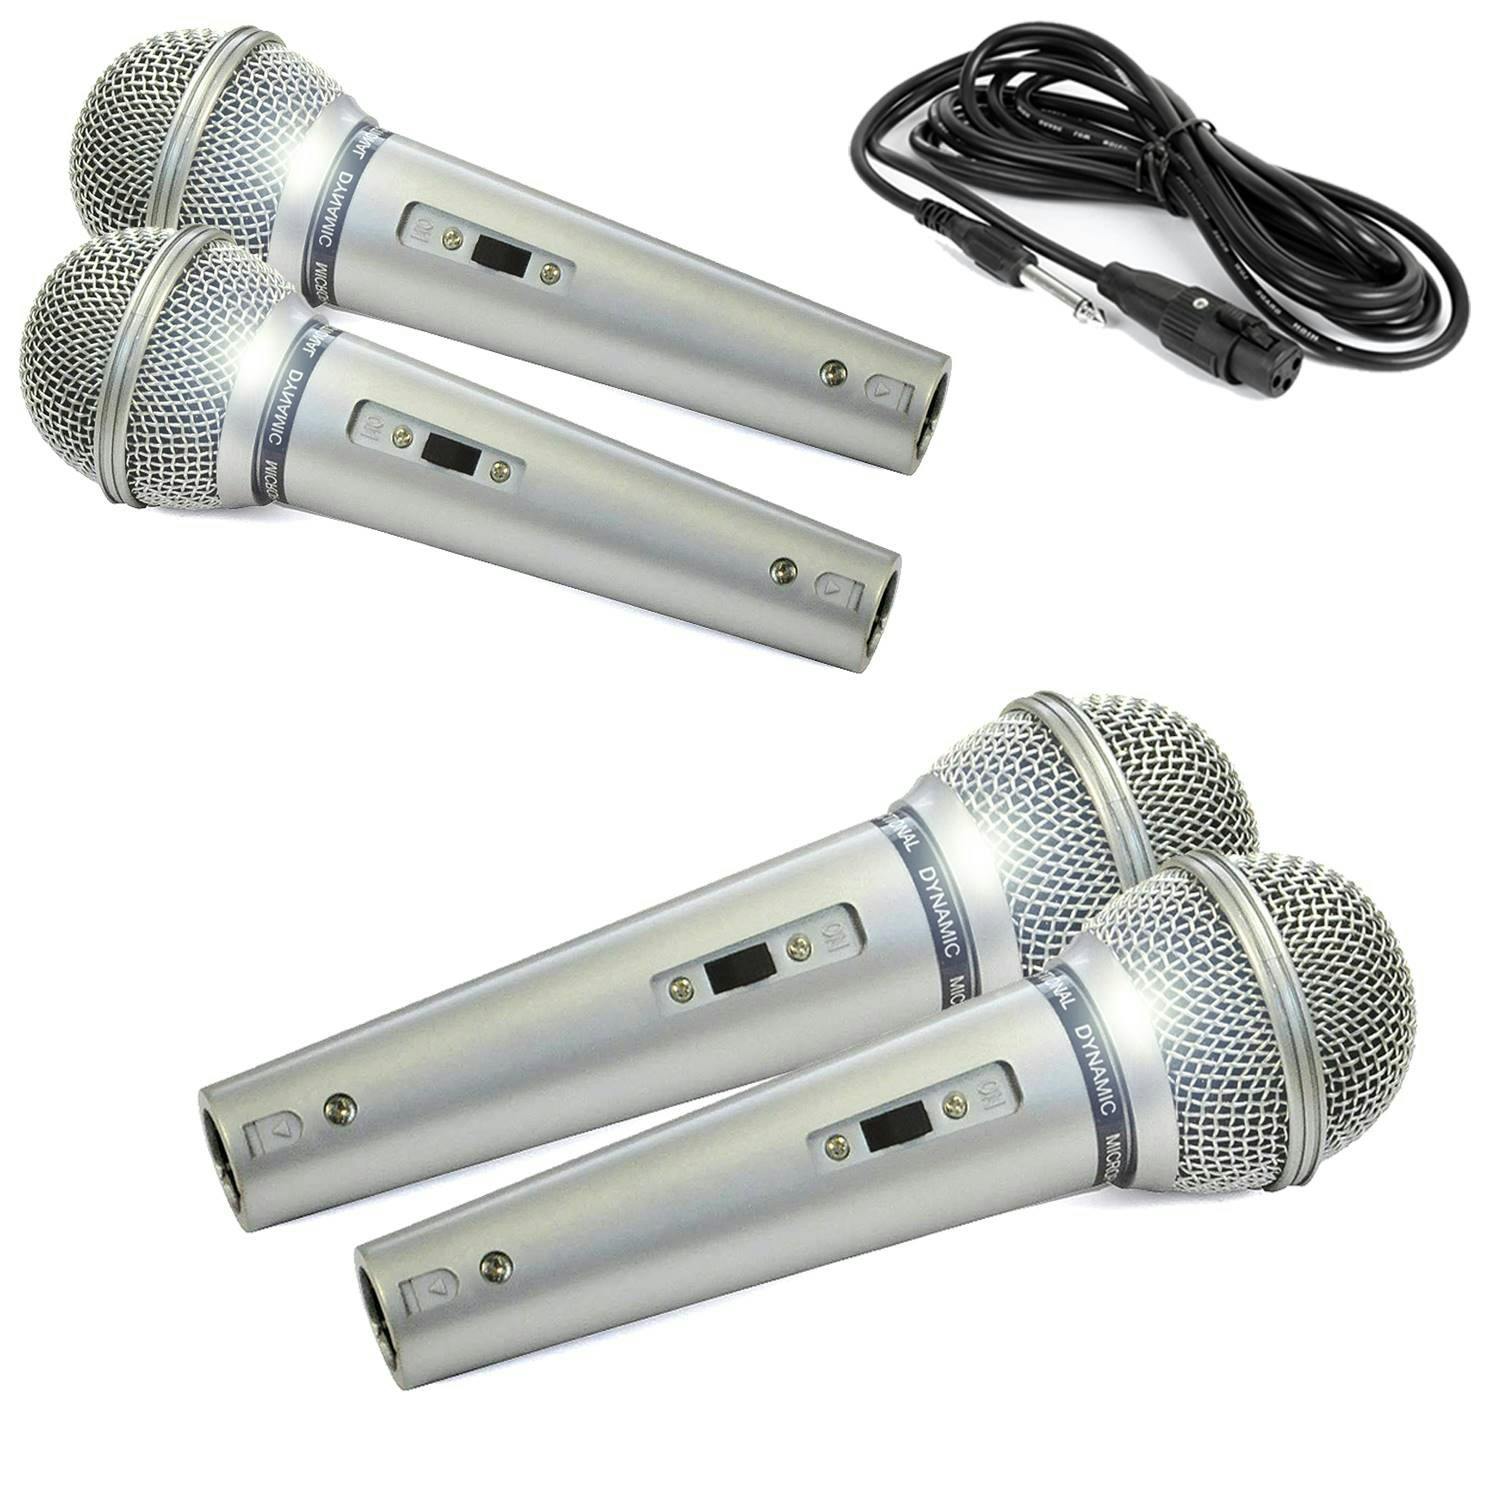 Microphone dynamique professionnel portable pour karaoké chanteur avec  câble 3 m Jack 6,3 mm câble détachable pour karaoké